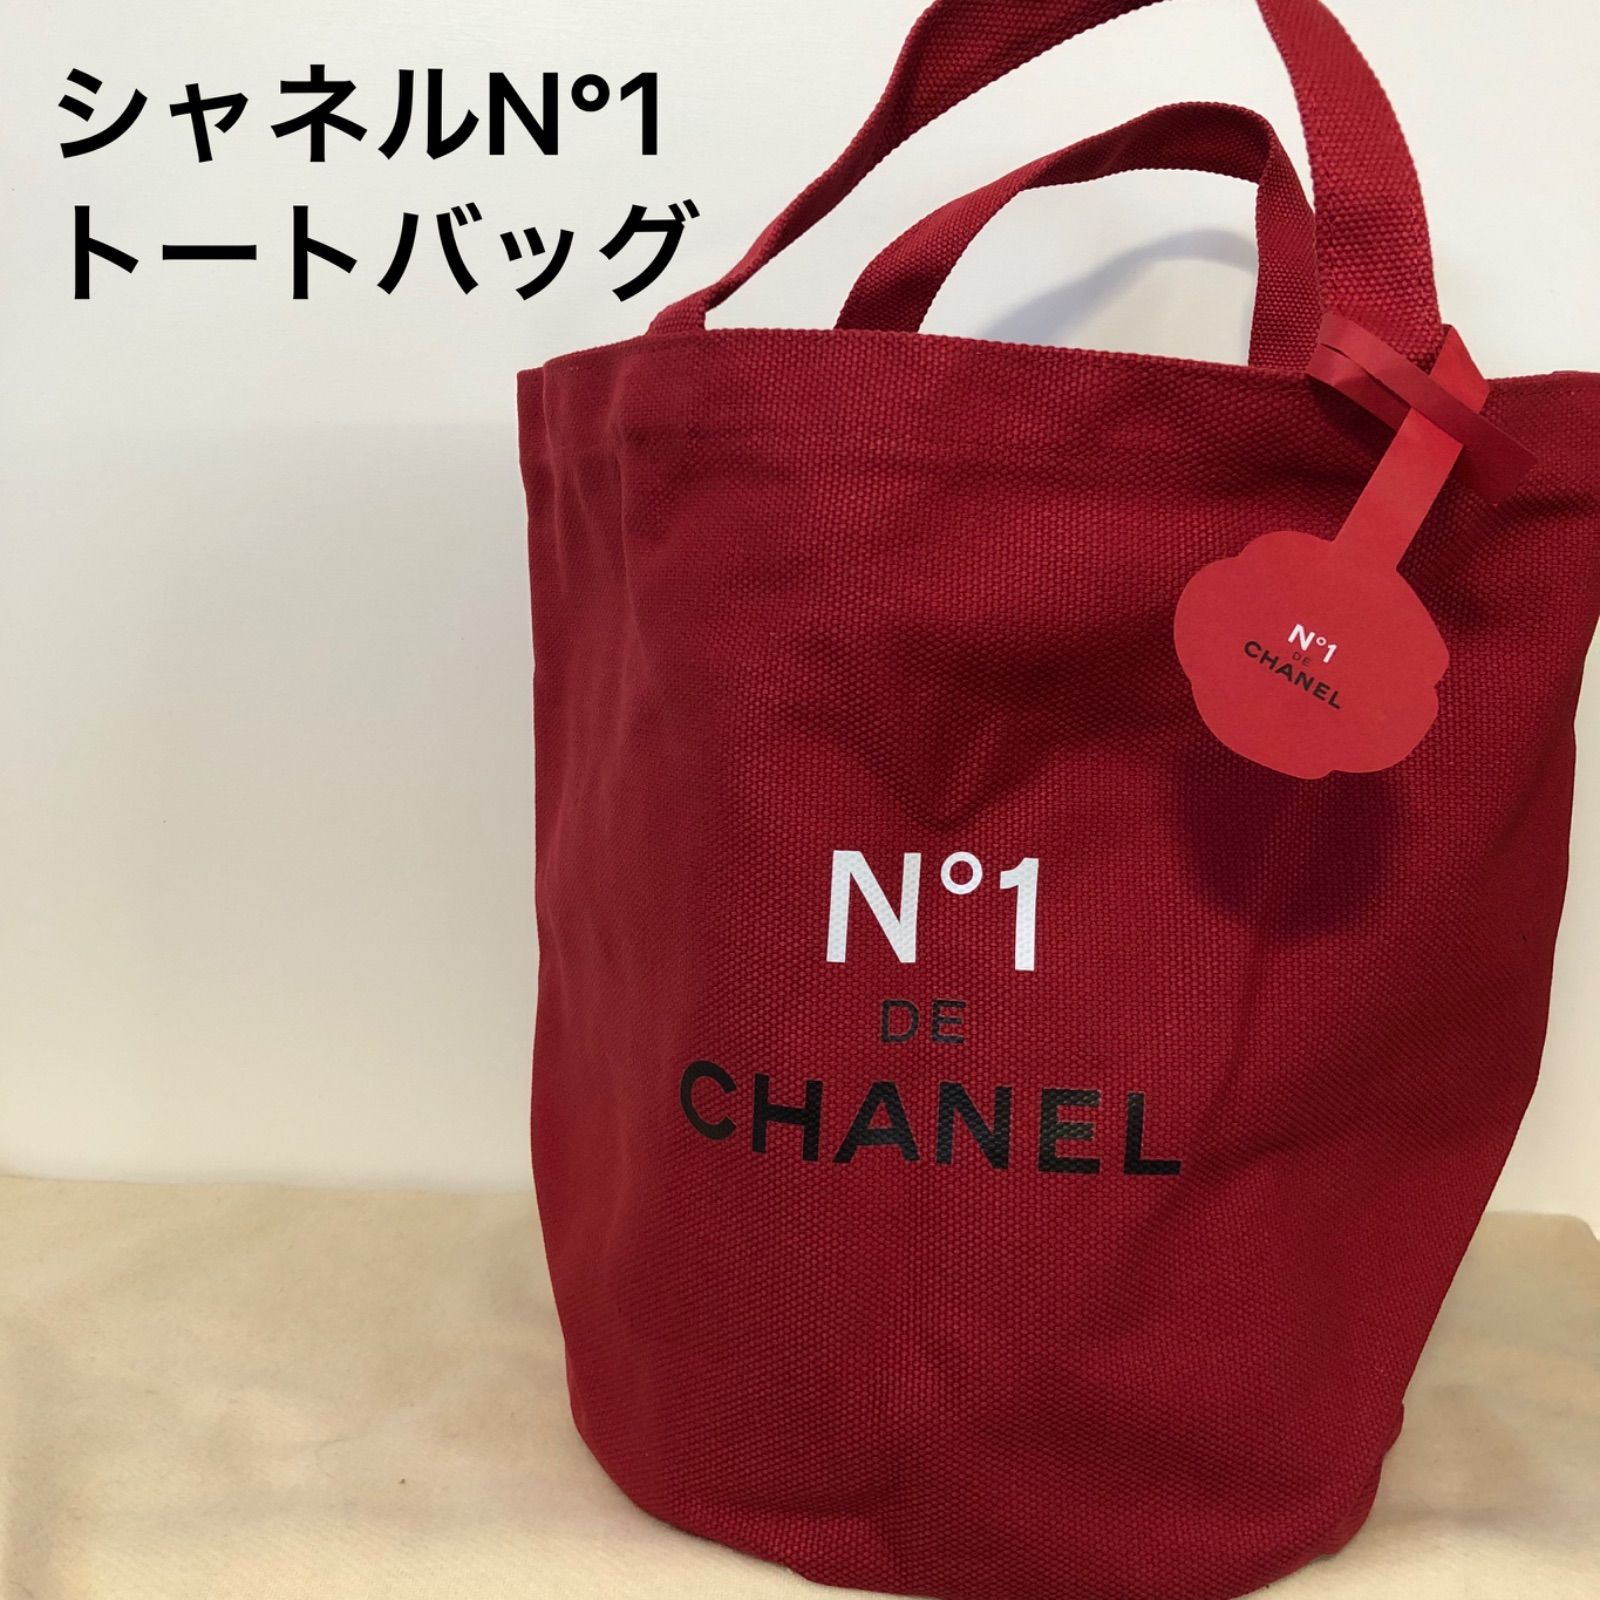 シャネル/N °1 DE CHANEL 赤色ノベルティバッグ - Himeko/メルカリshop